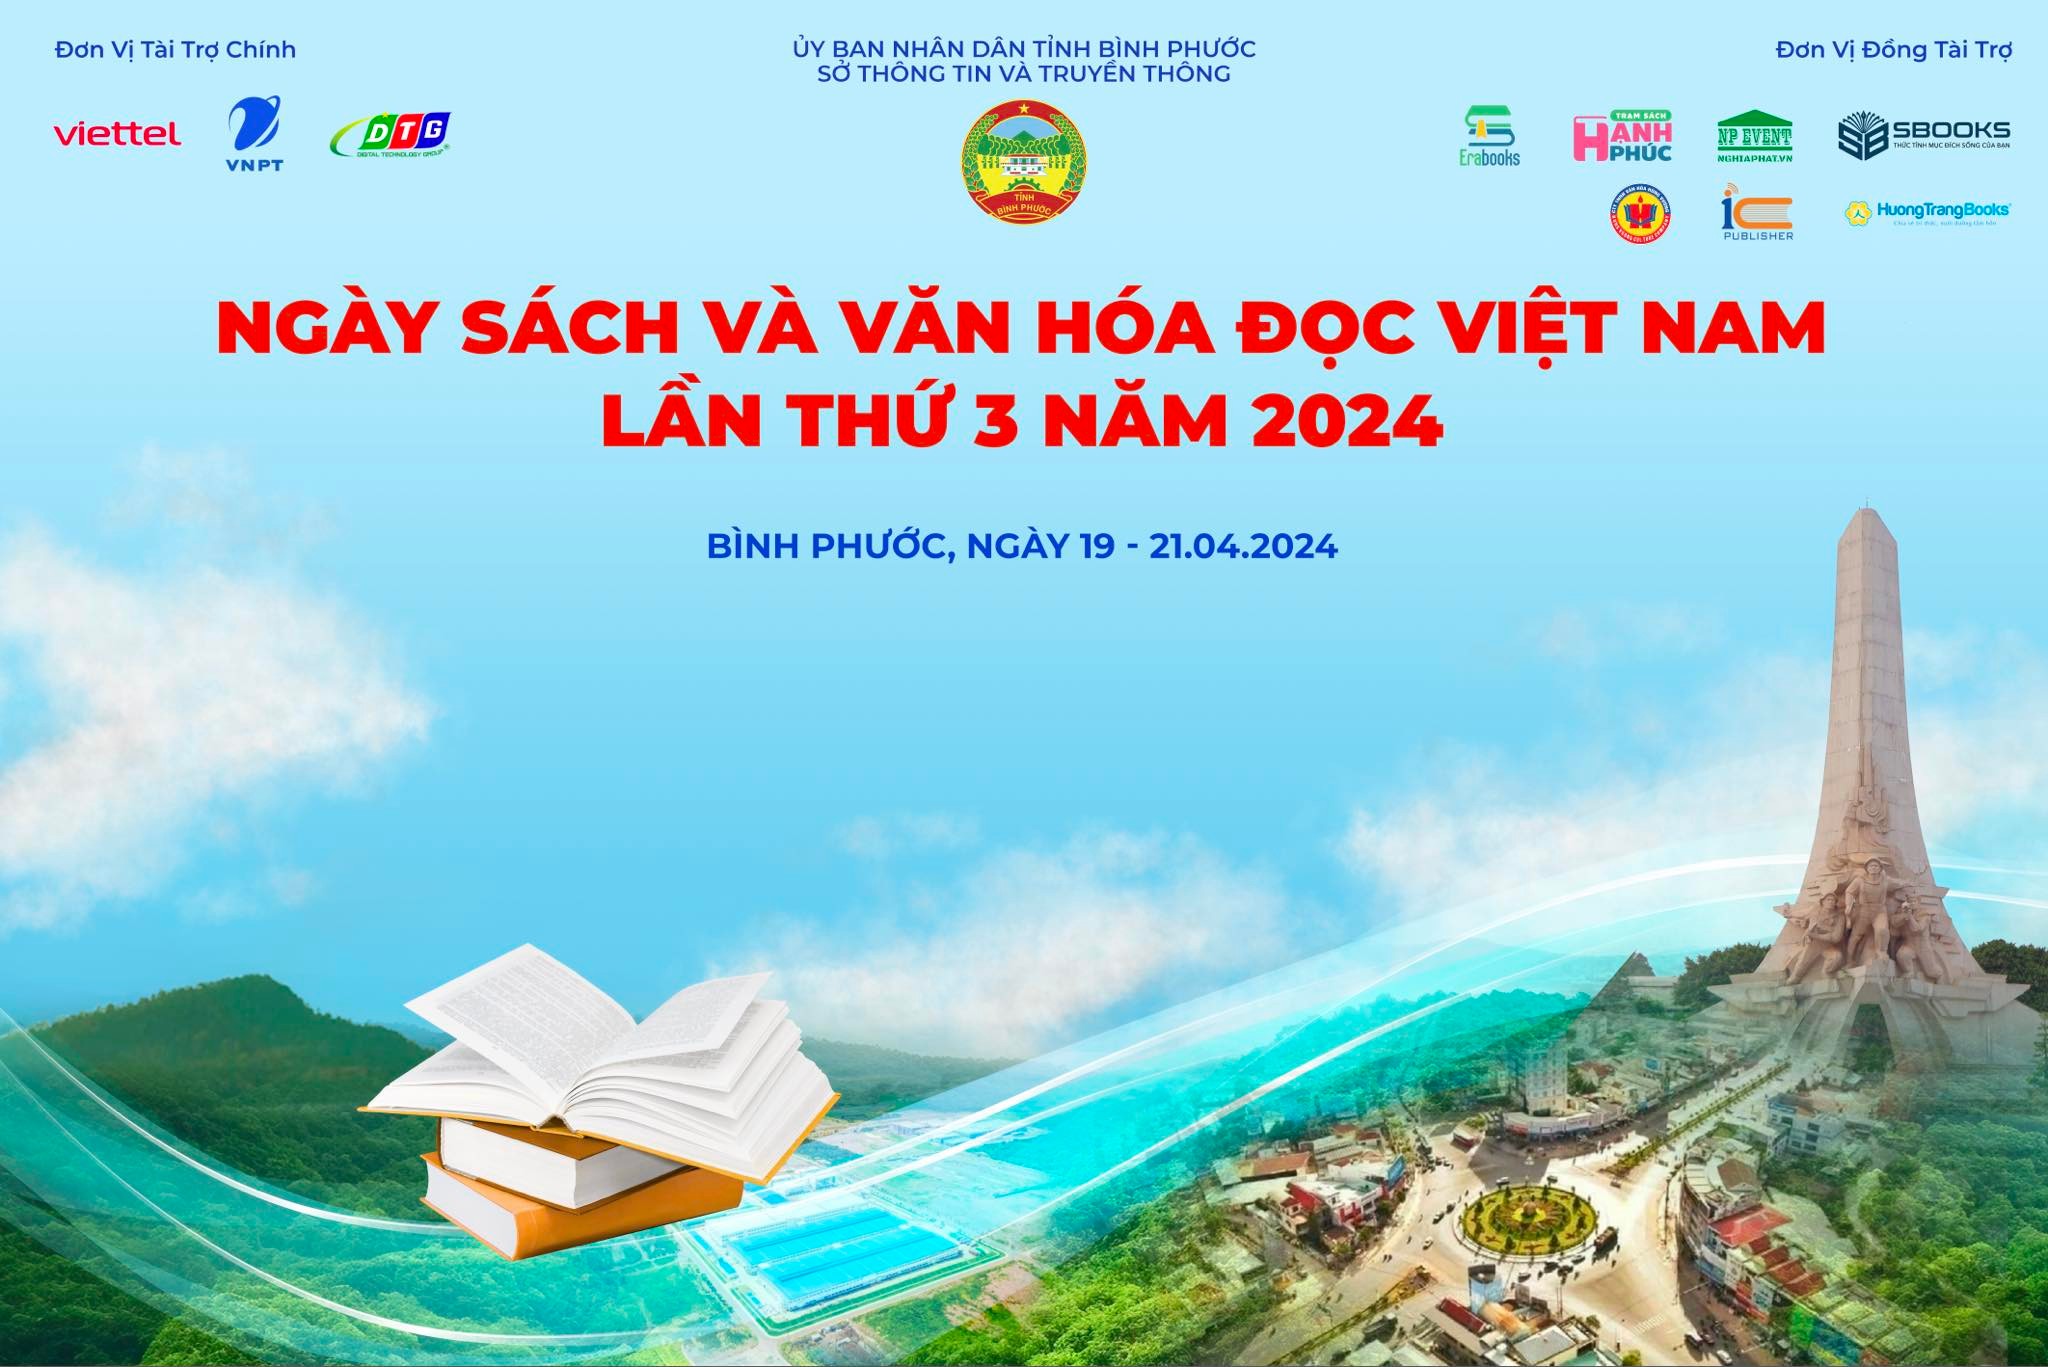 Lễ khai mạc Ngày sách và Văn hóa đọc Việt Nam năm 2024 trên địa bàn tỉnh Bình Phước sẽ khai mạc vào lúc 7 giờ 30 phút ngày 19/4/2024.